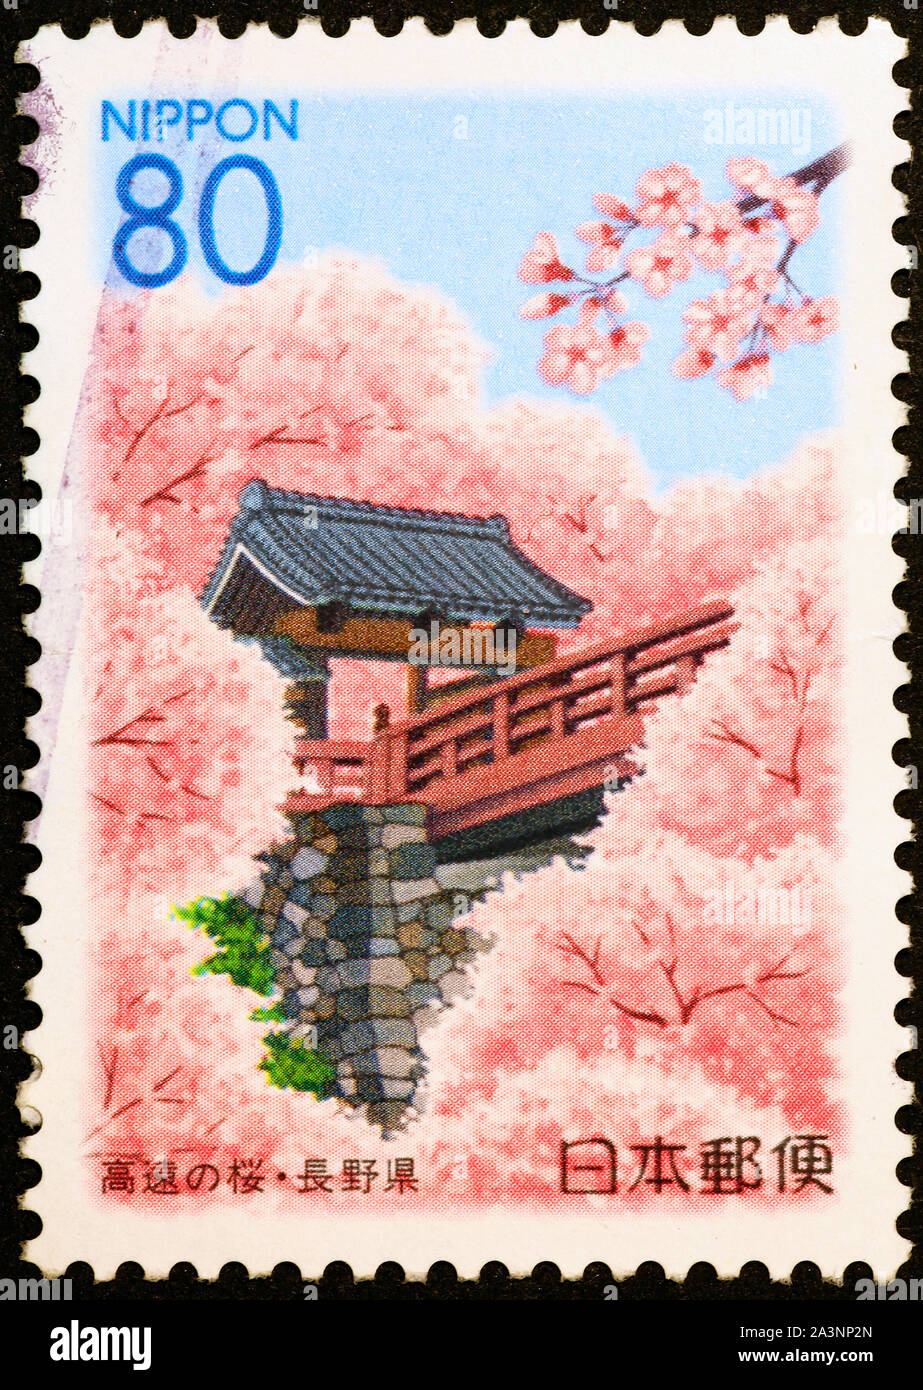 Los cerezos en flor en la estampilla postal de Japón Foto de stock